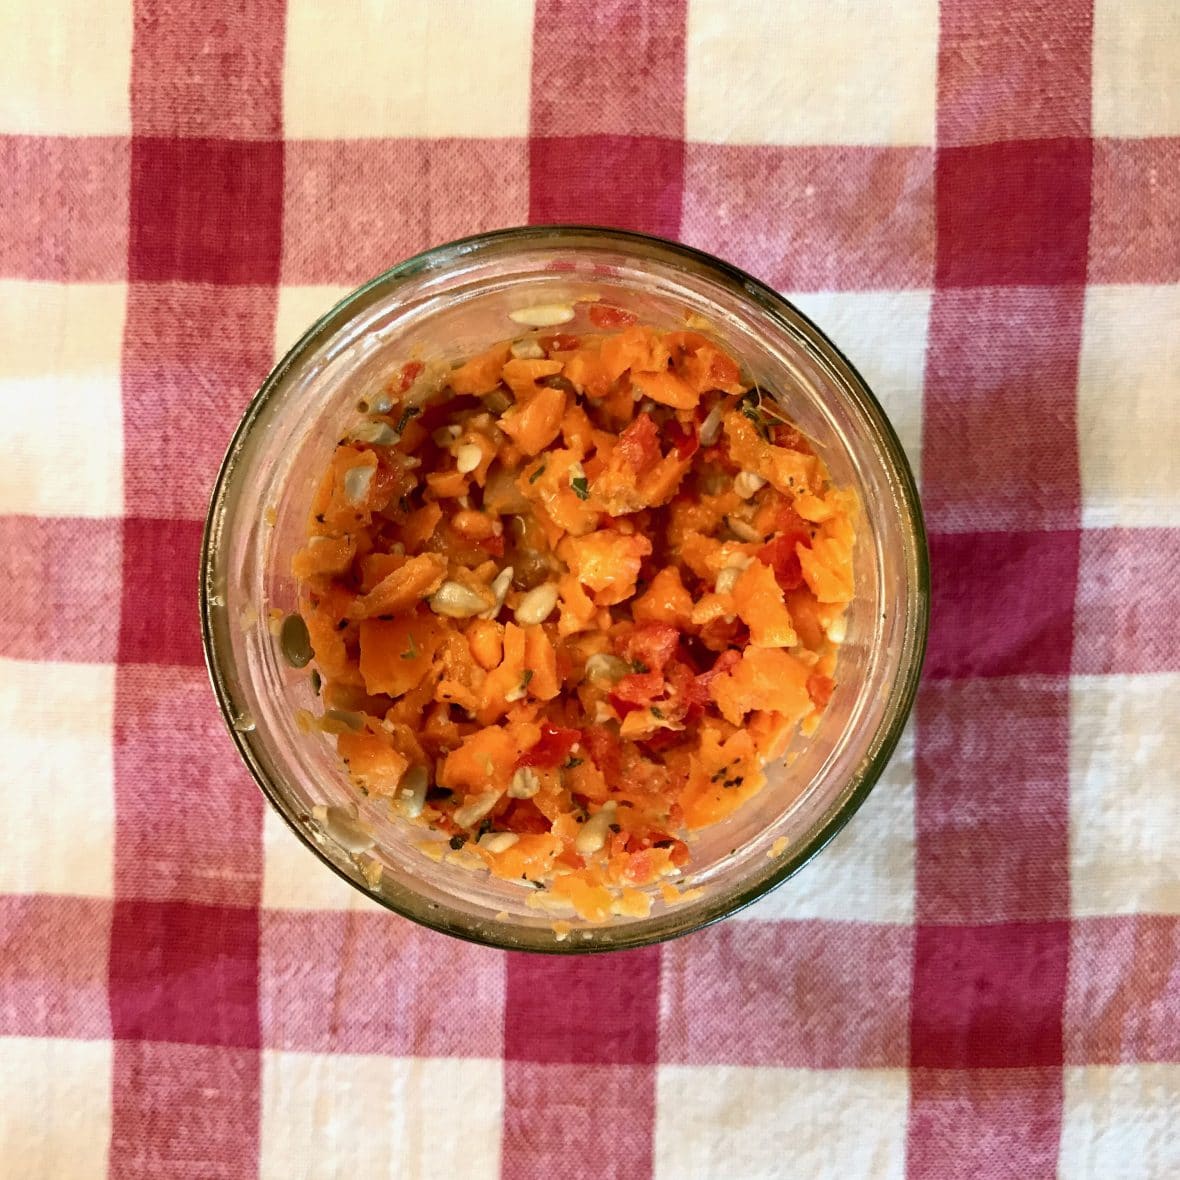 Rohköstlicher Möhren-Paprika-Mandarinen-Salat aus dem Thermomix mit ätherischen Ölen in einem kleinem Glas für das Buffett.